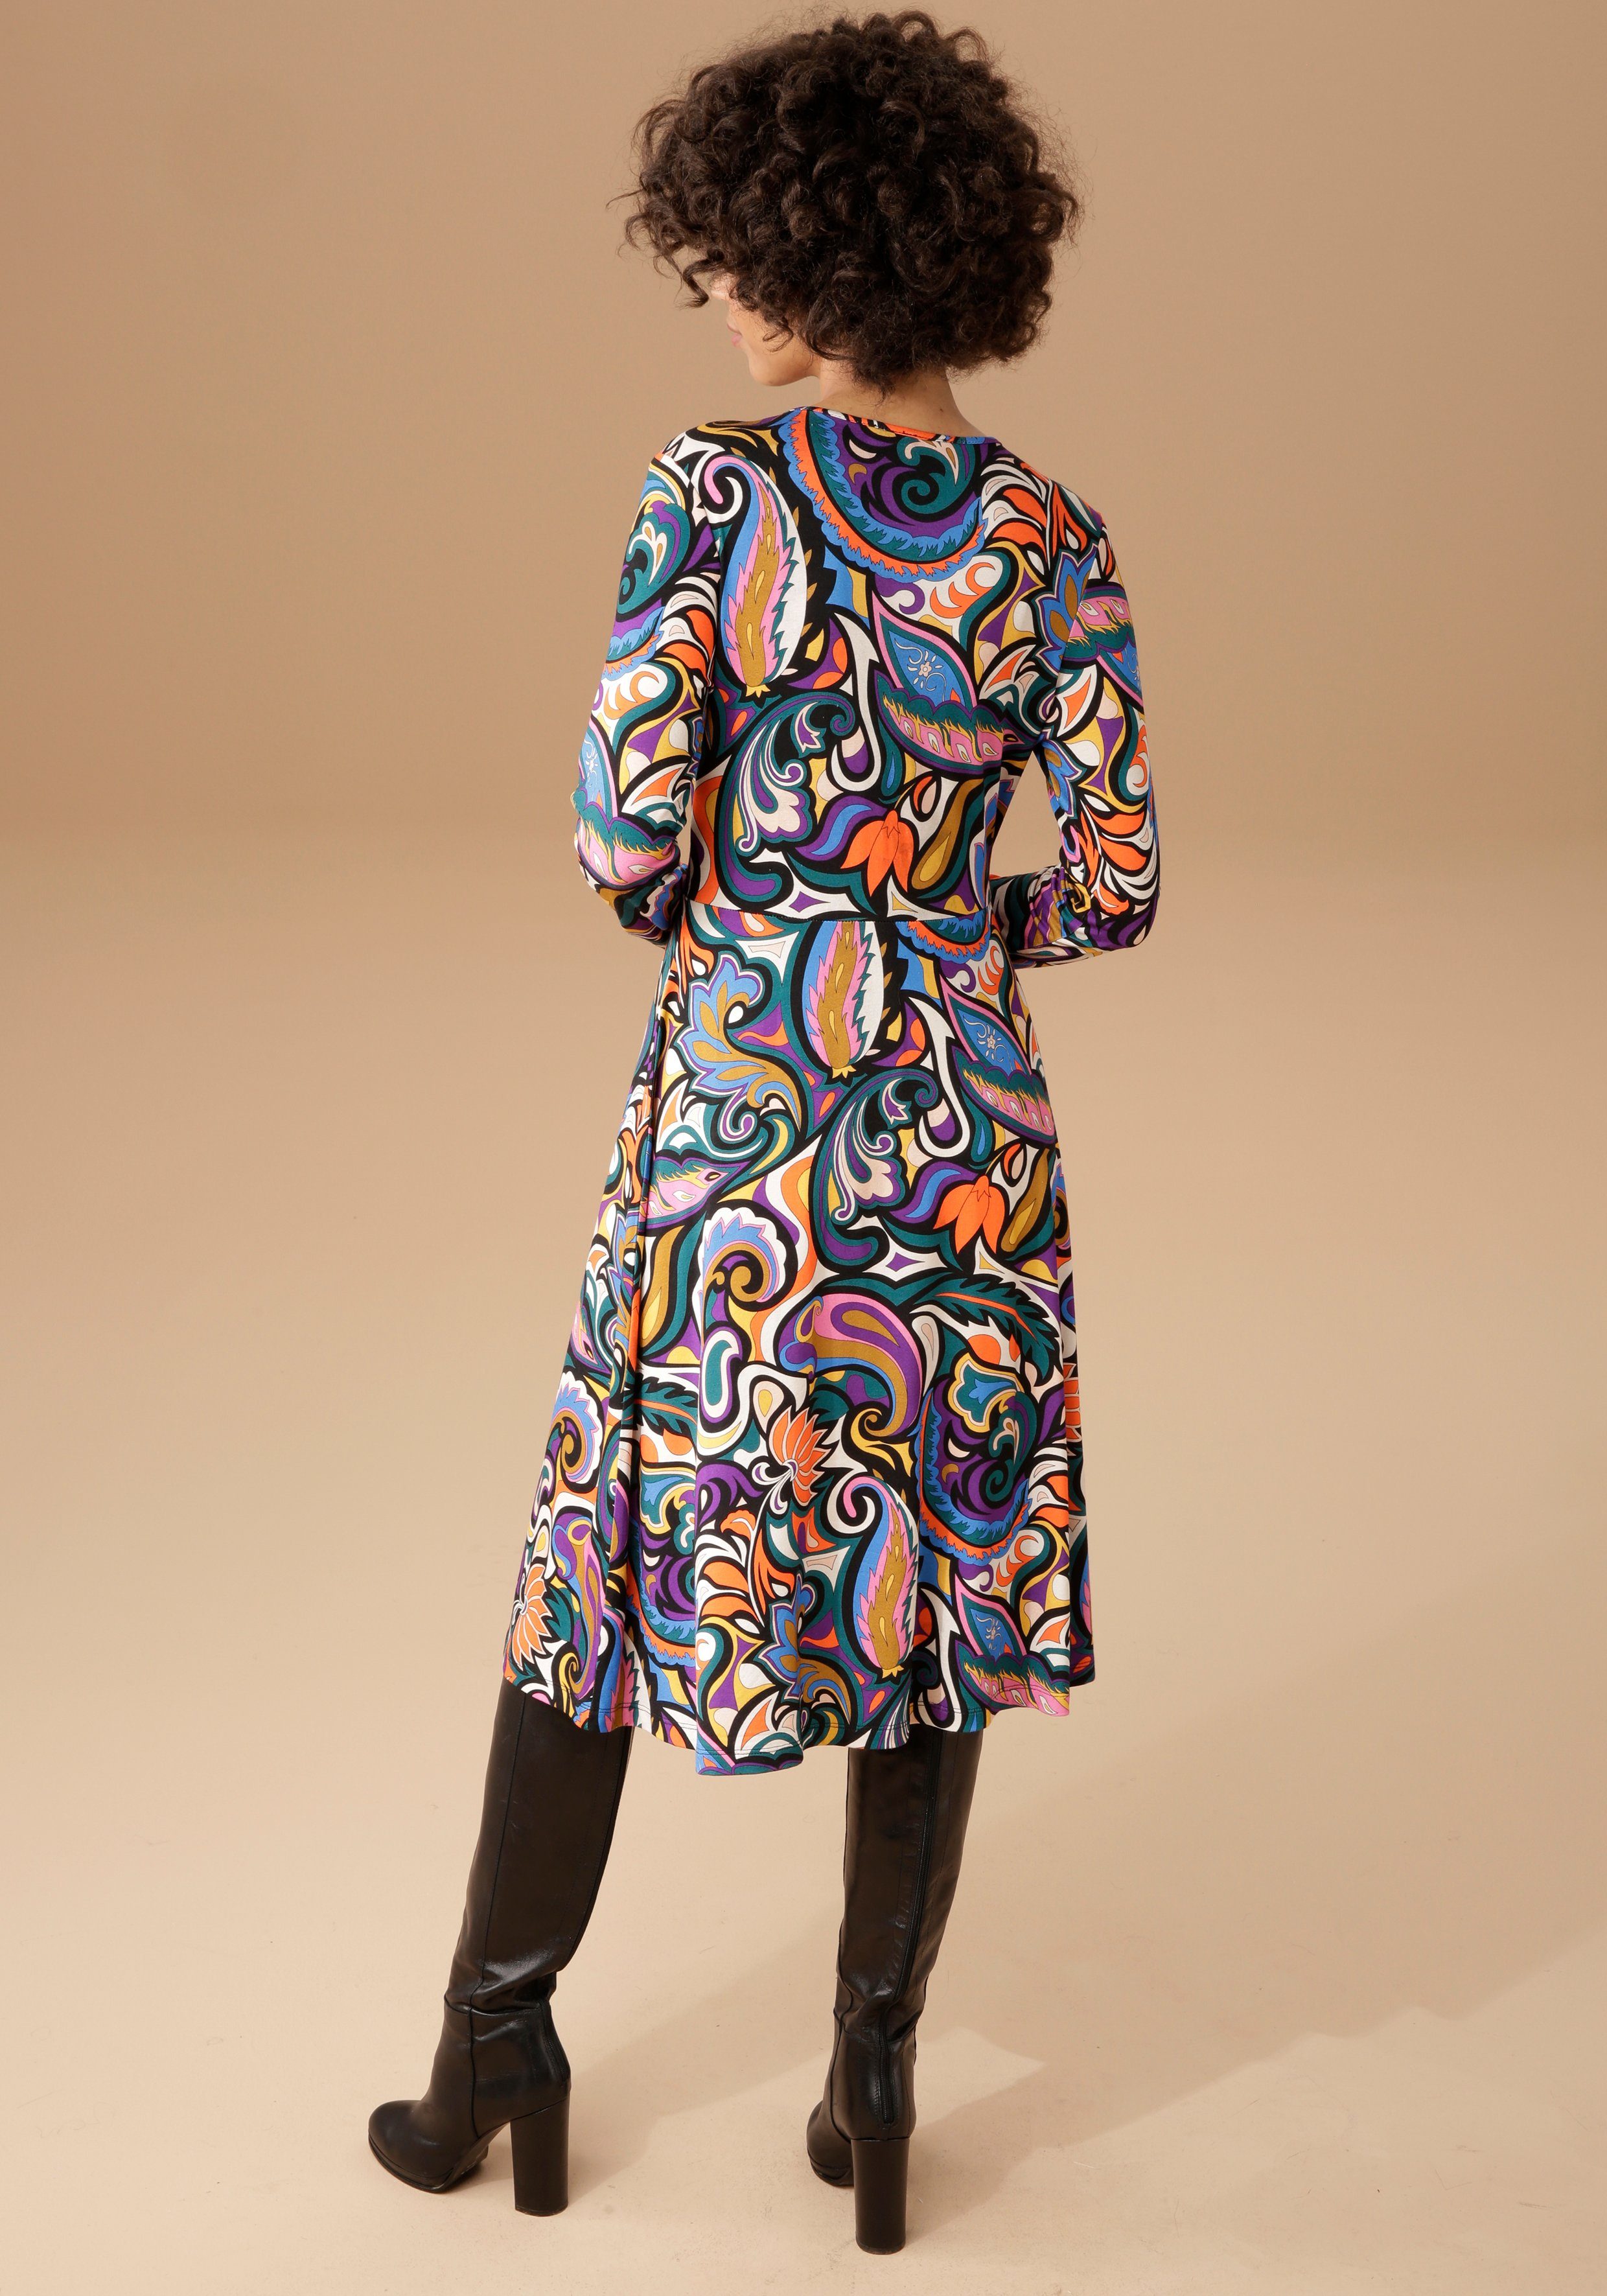 Blumen- und Jerseykleid farbenfrohem, CASUAL mit Aniston Paisley-Druck graphischen